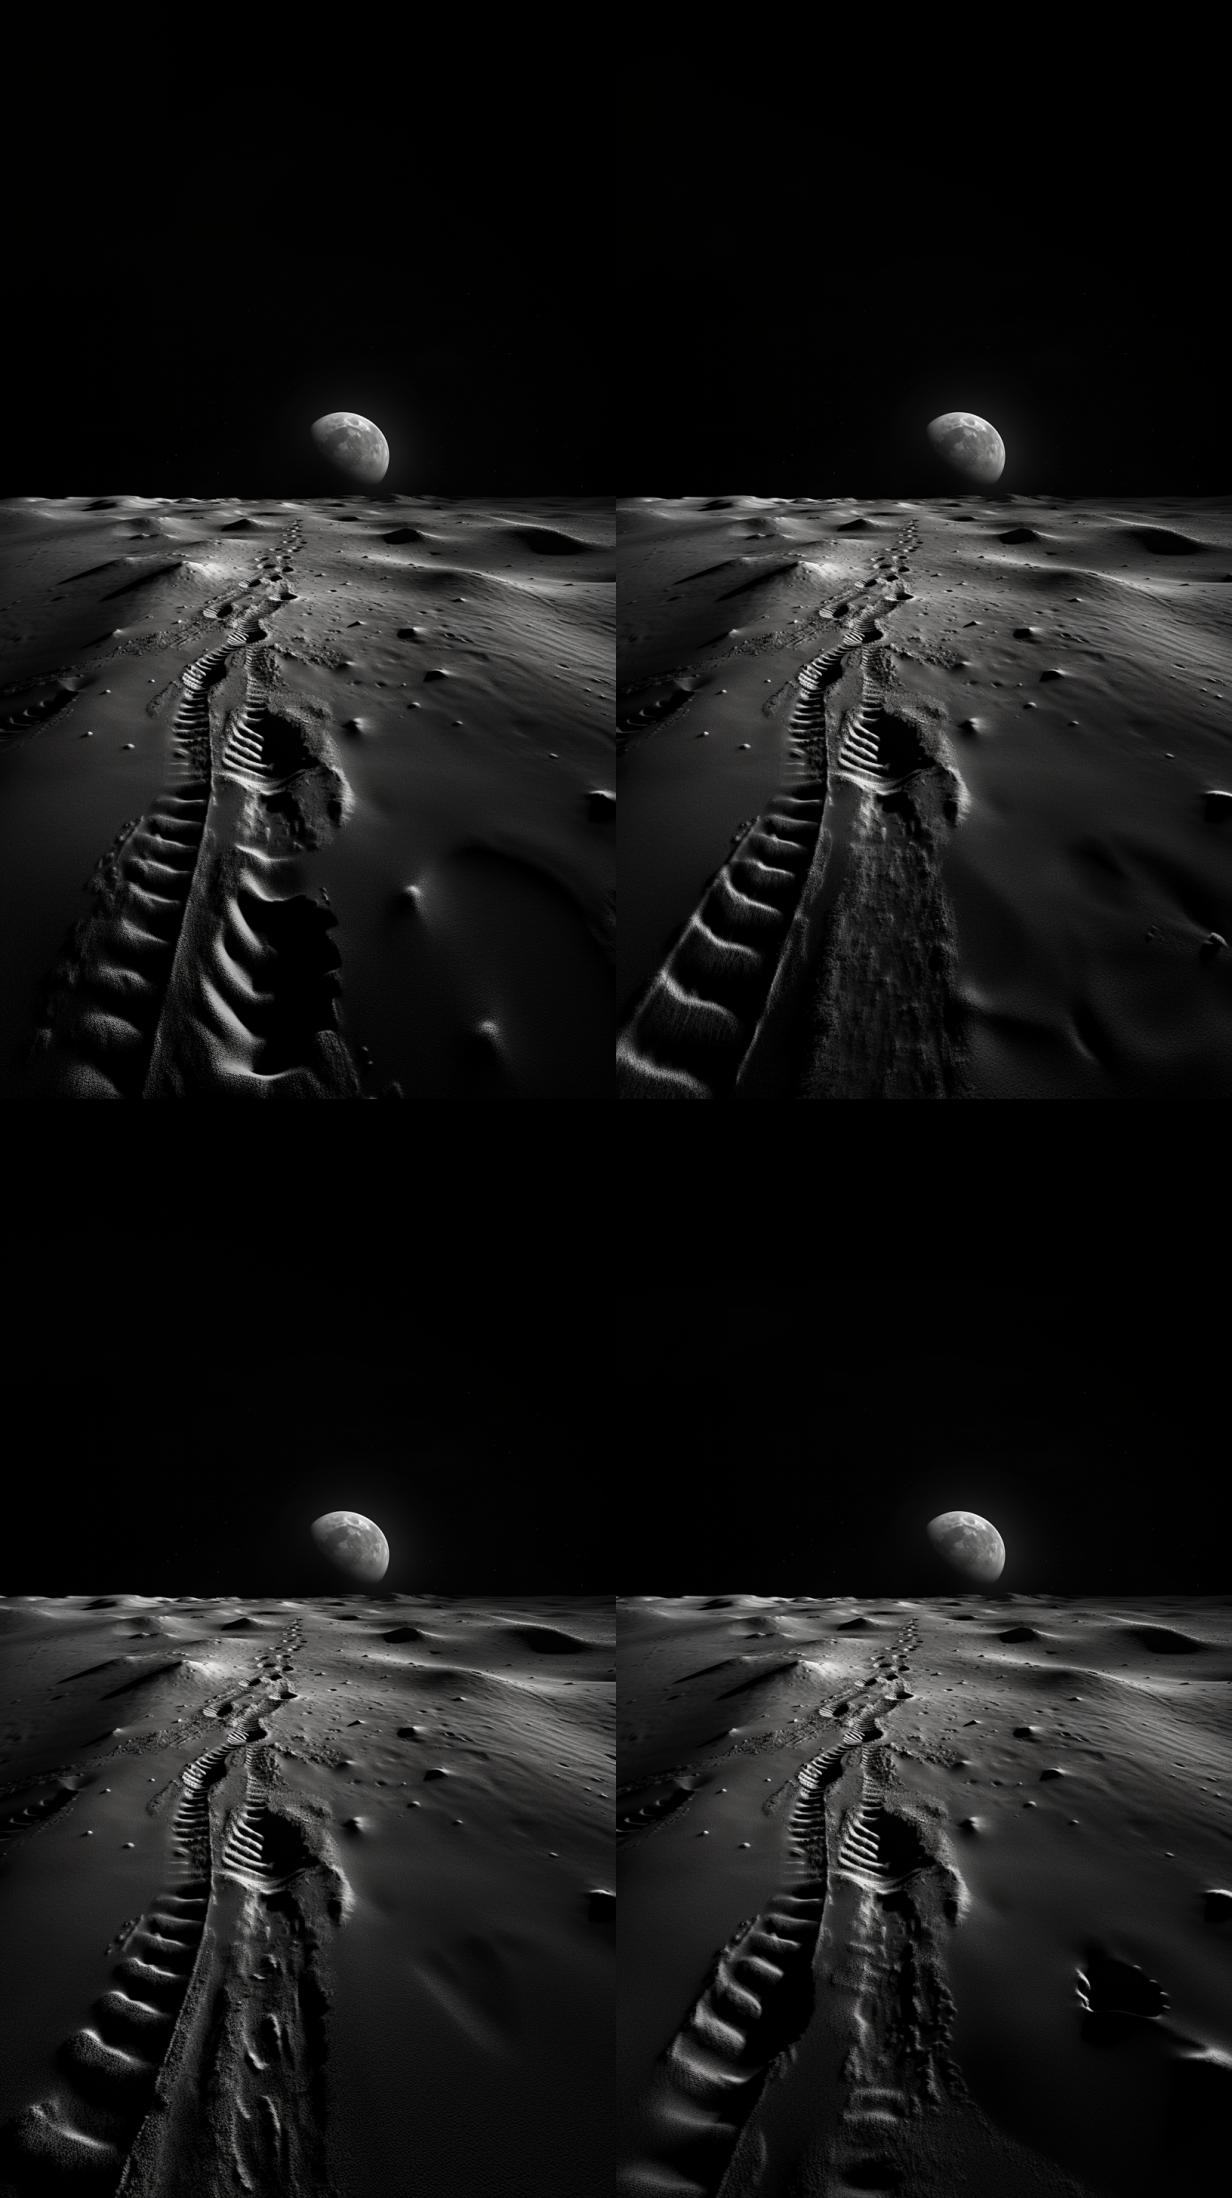 footprint on the moon 2 out ar